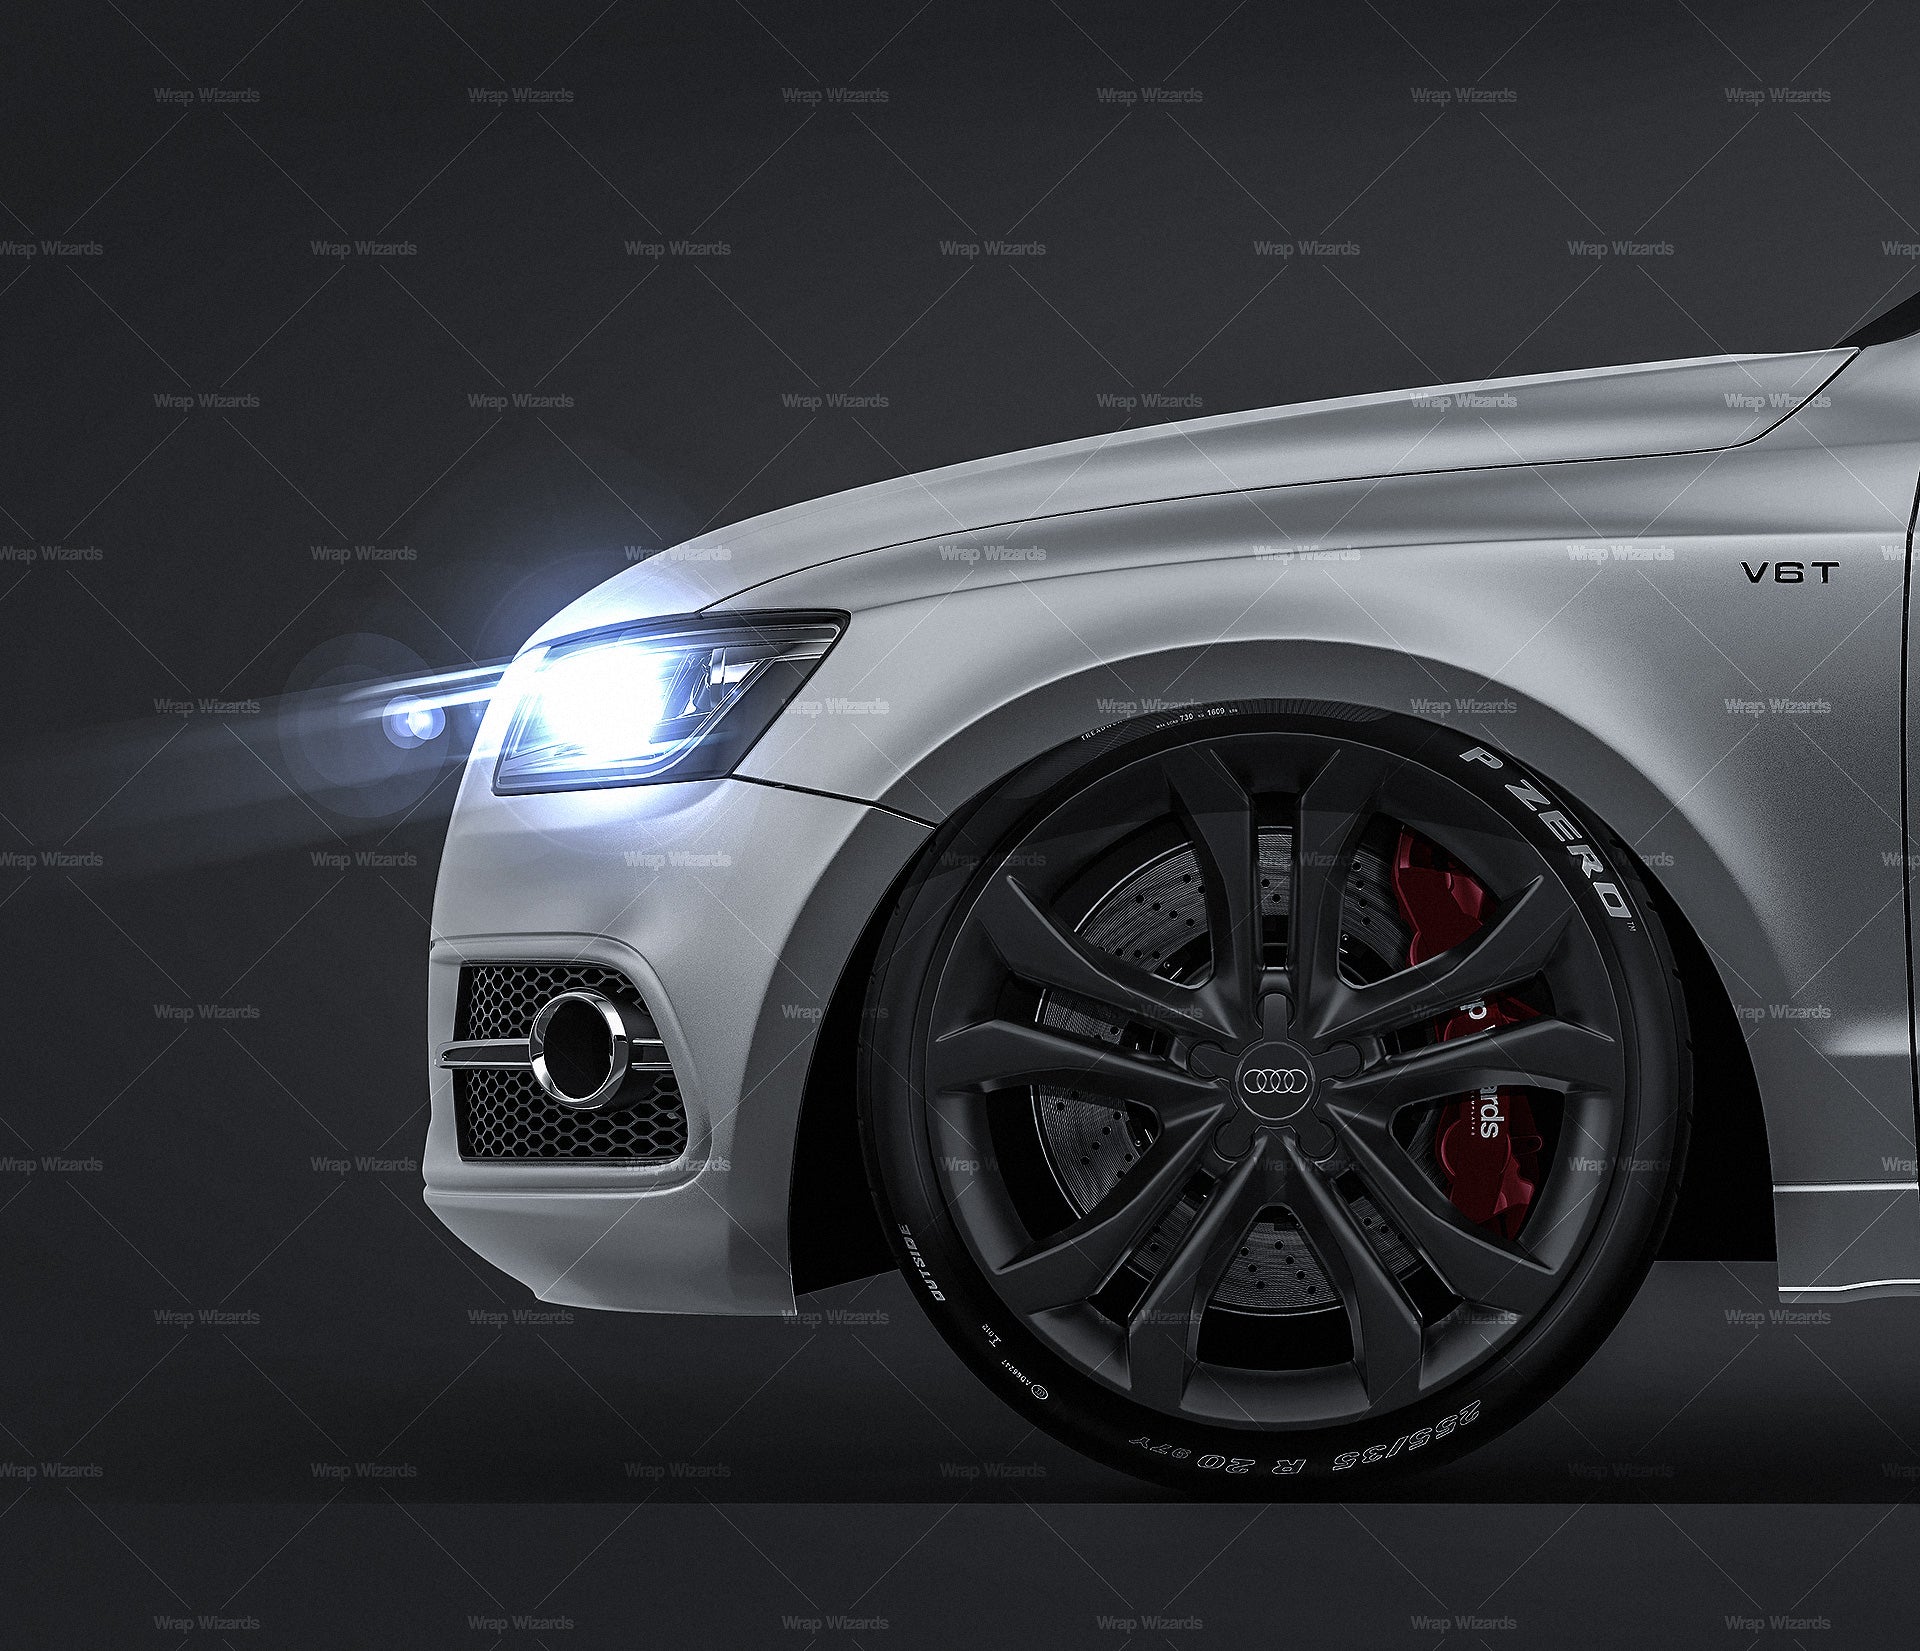 Audi SQ5 2013 satin matt finish - all sides Car Mockup Template.psd